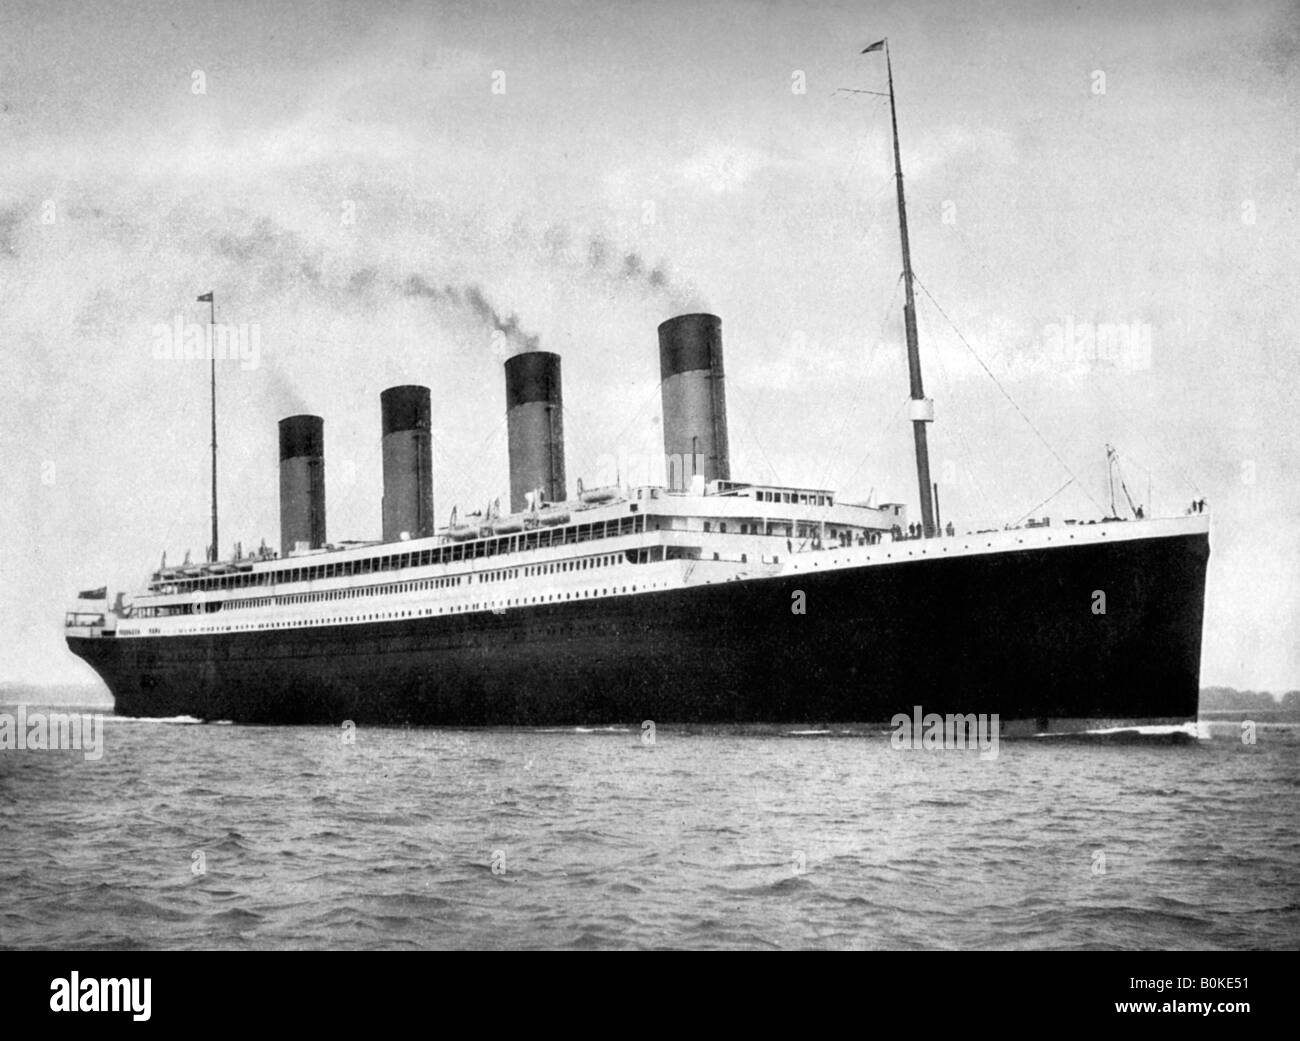 RMS 'Olympic', White Star Line ocean liner, 1911-1912.Artist: FGO Stuart Stock Photo